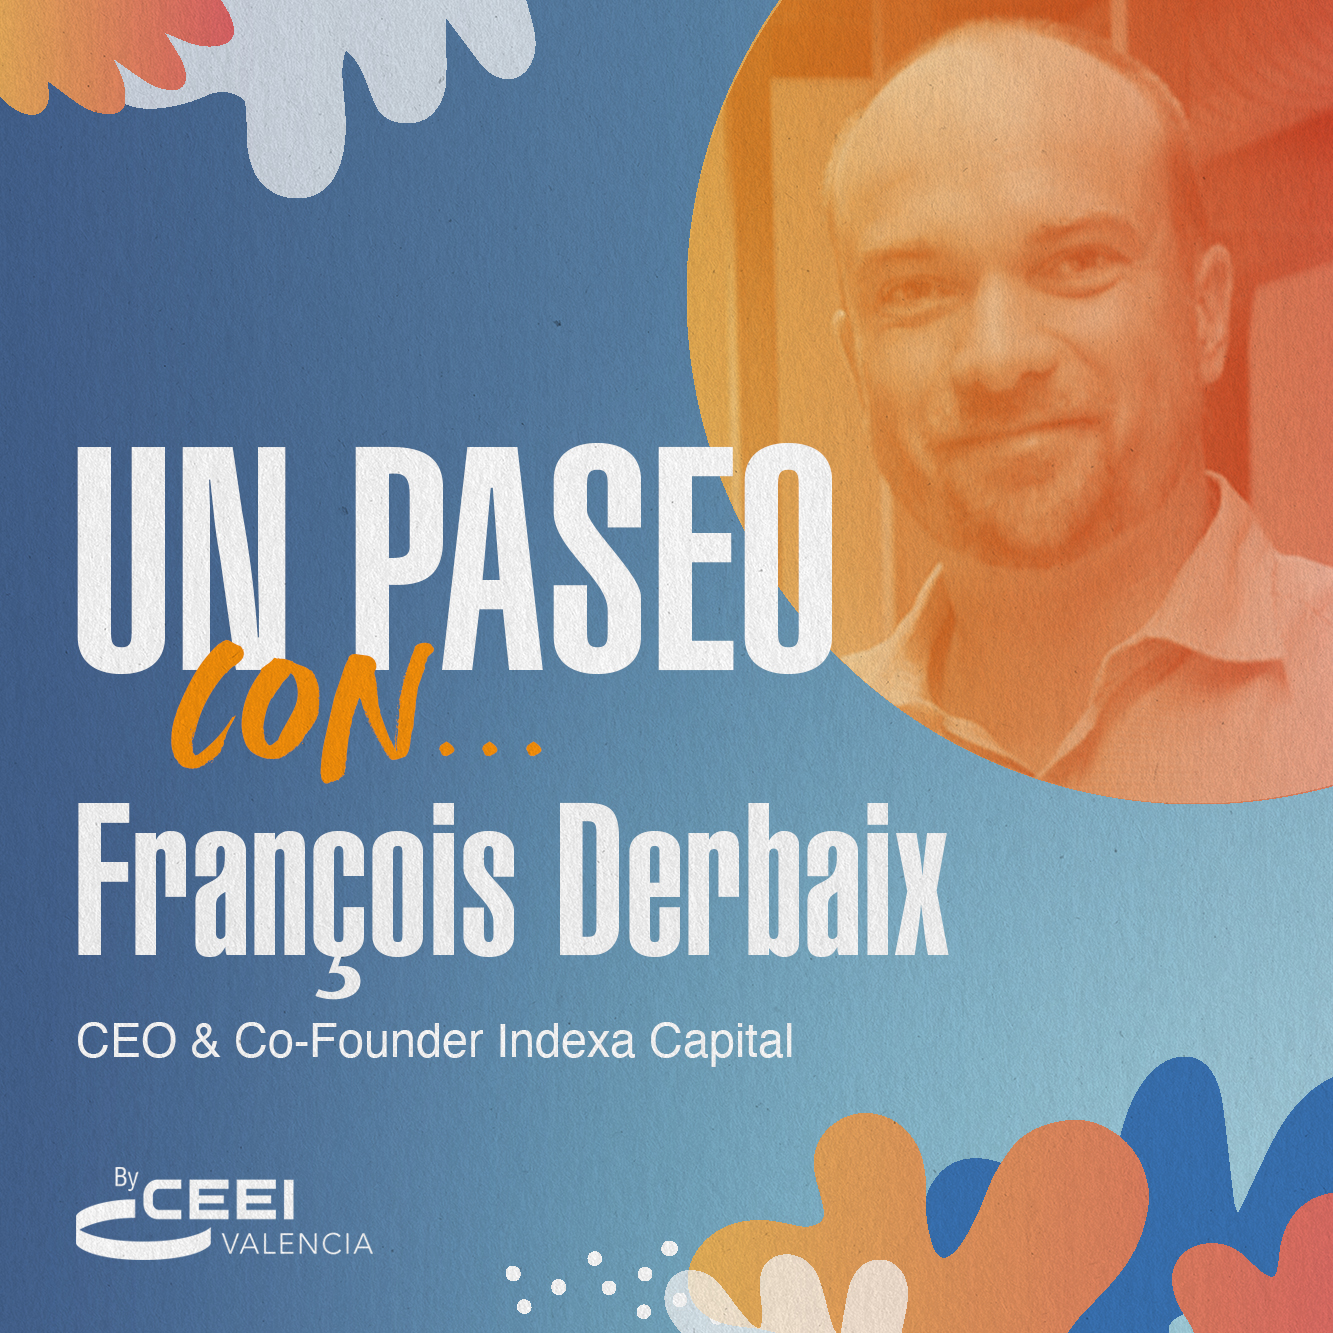 Un paseo con Franois Derbaix, CEO & Co-Founder Indexa Capital